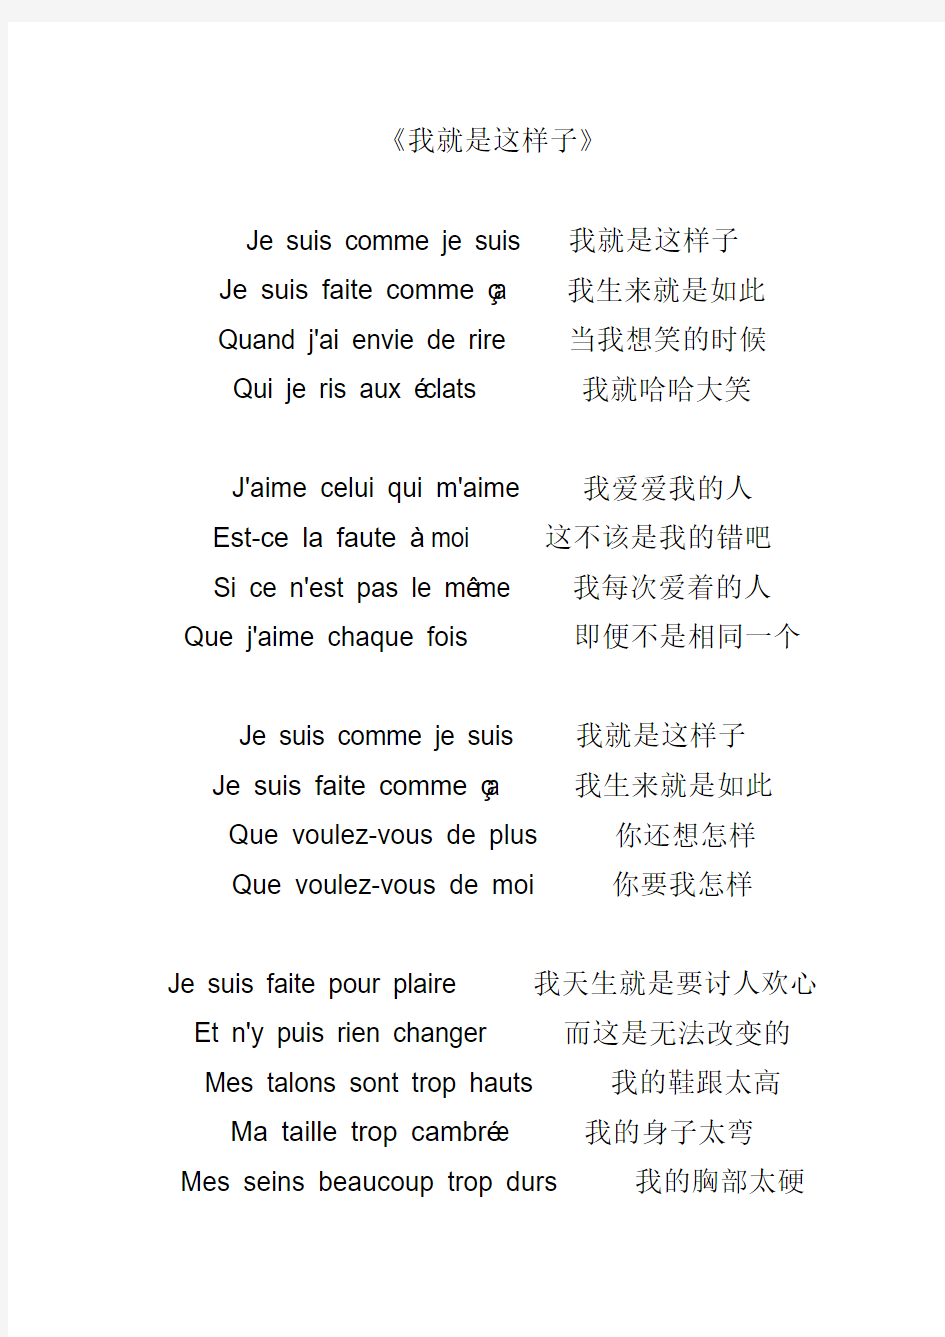 优美的法语文章 诗歌